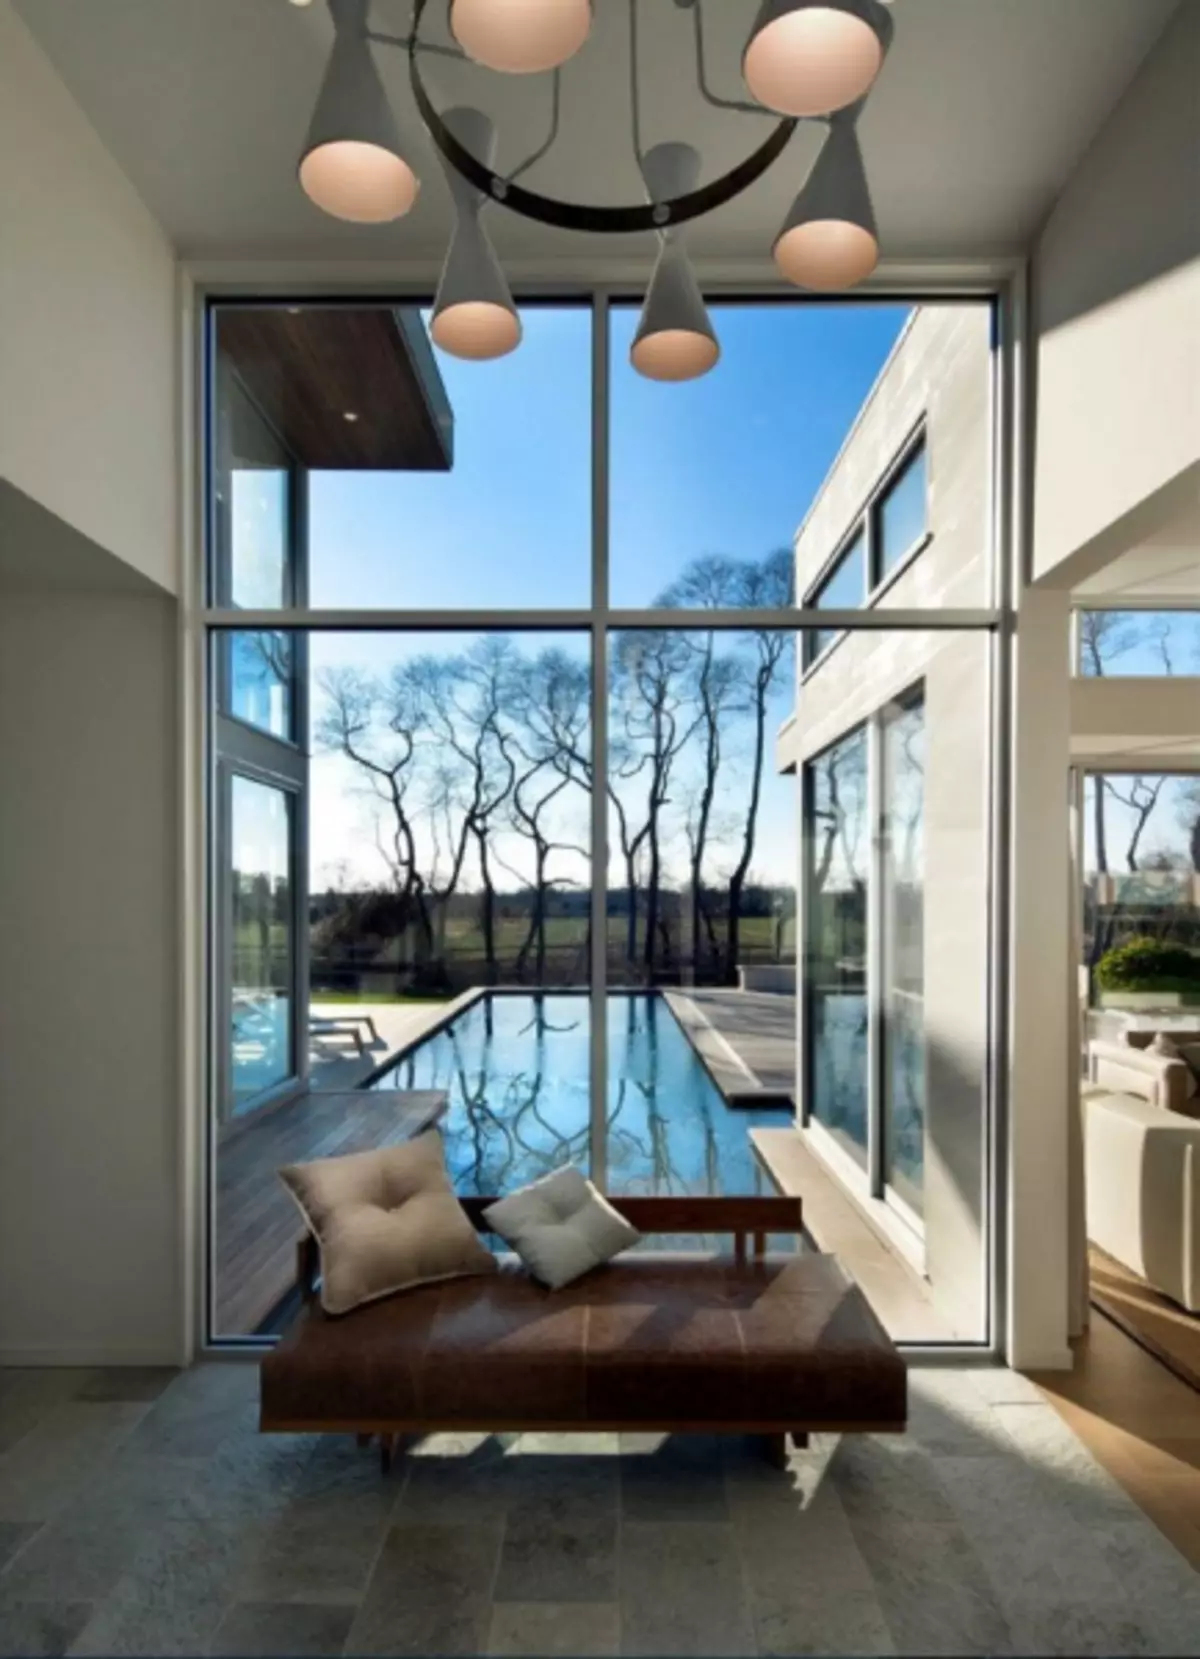 インテリア内のパノラマ窓：家の中のスペースとアパートのデザインでの使用のためのオプション（47写真）